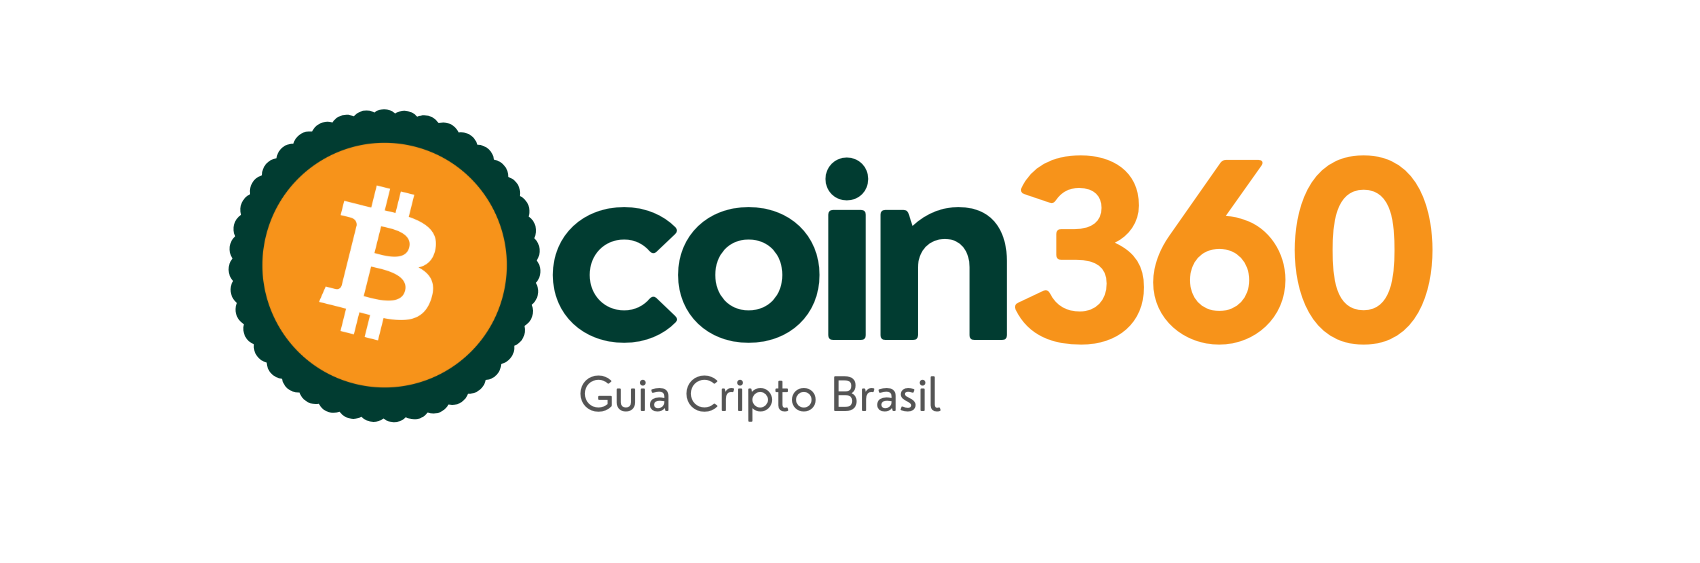 logo coin360 544x180 (1)